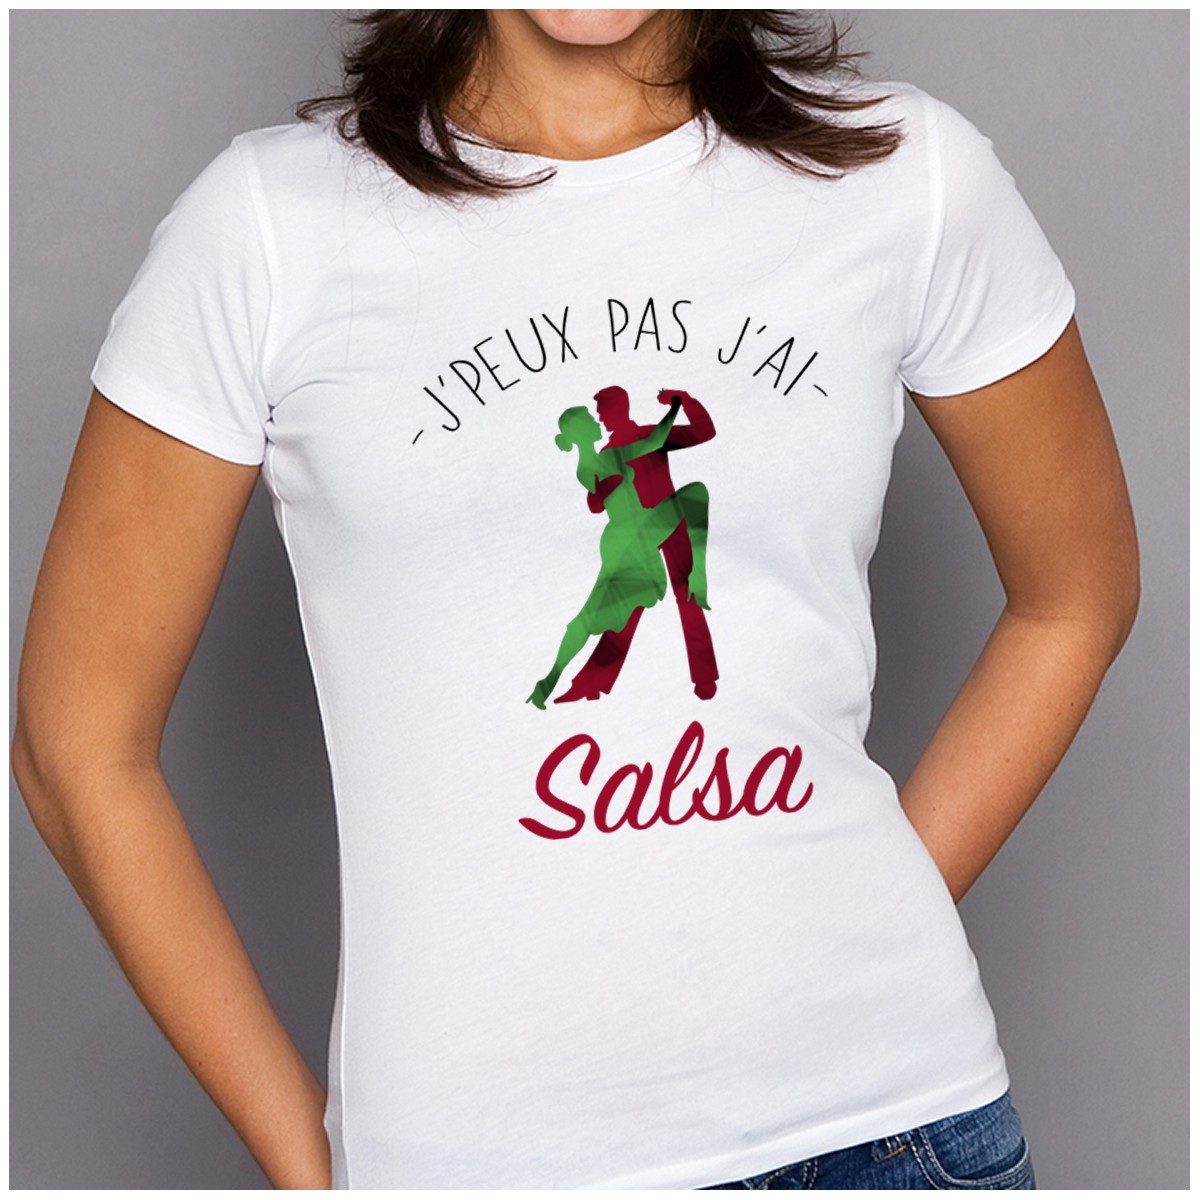 T-shirt J'peux pas j'ai ... Salsa